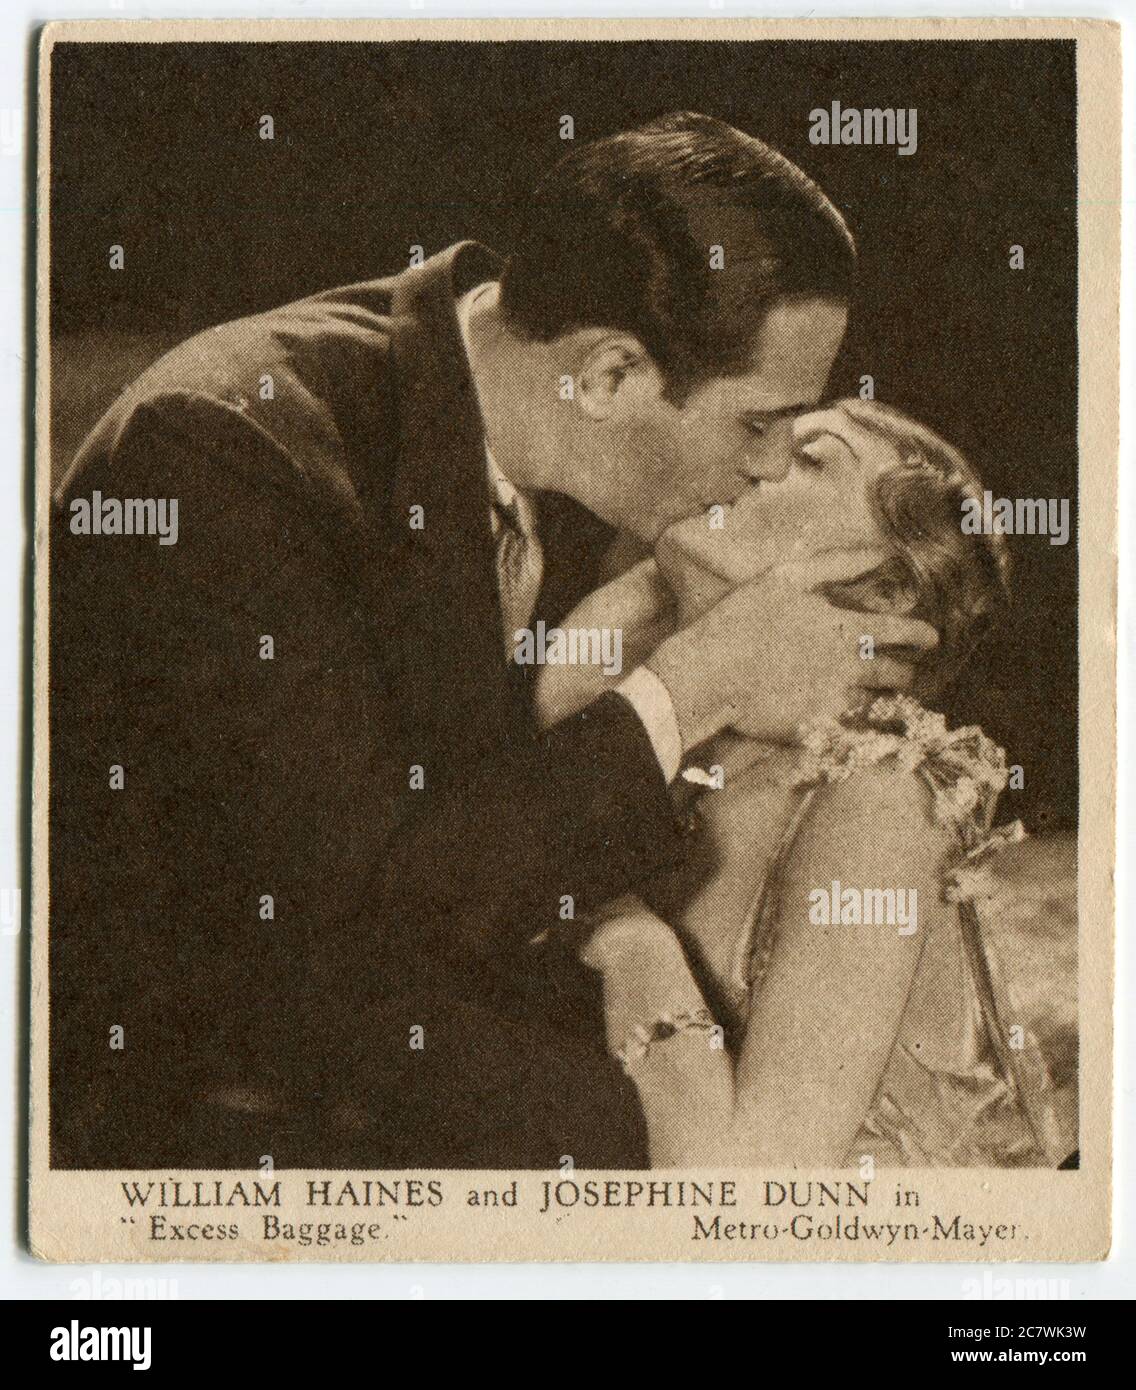 Carte à cigarettes Kensitas « Love Scenes from Famous films » - William Haynes et Josephine Dunn dans « Excess Bags ». Deuxième série publiée en 1932 par J. Wix & Sons Ltd Banque D'Images